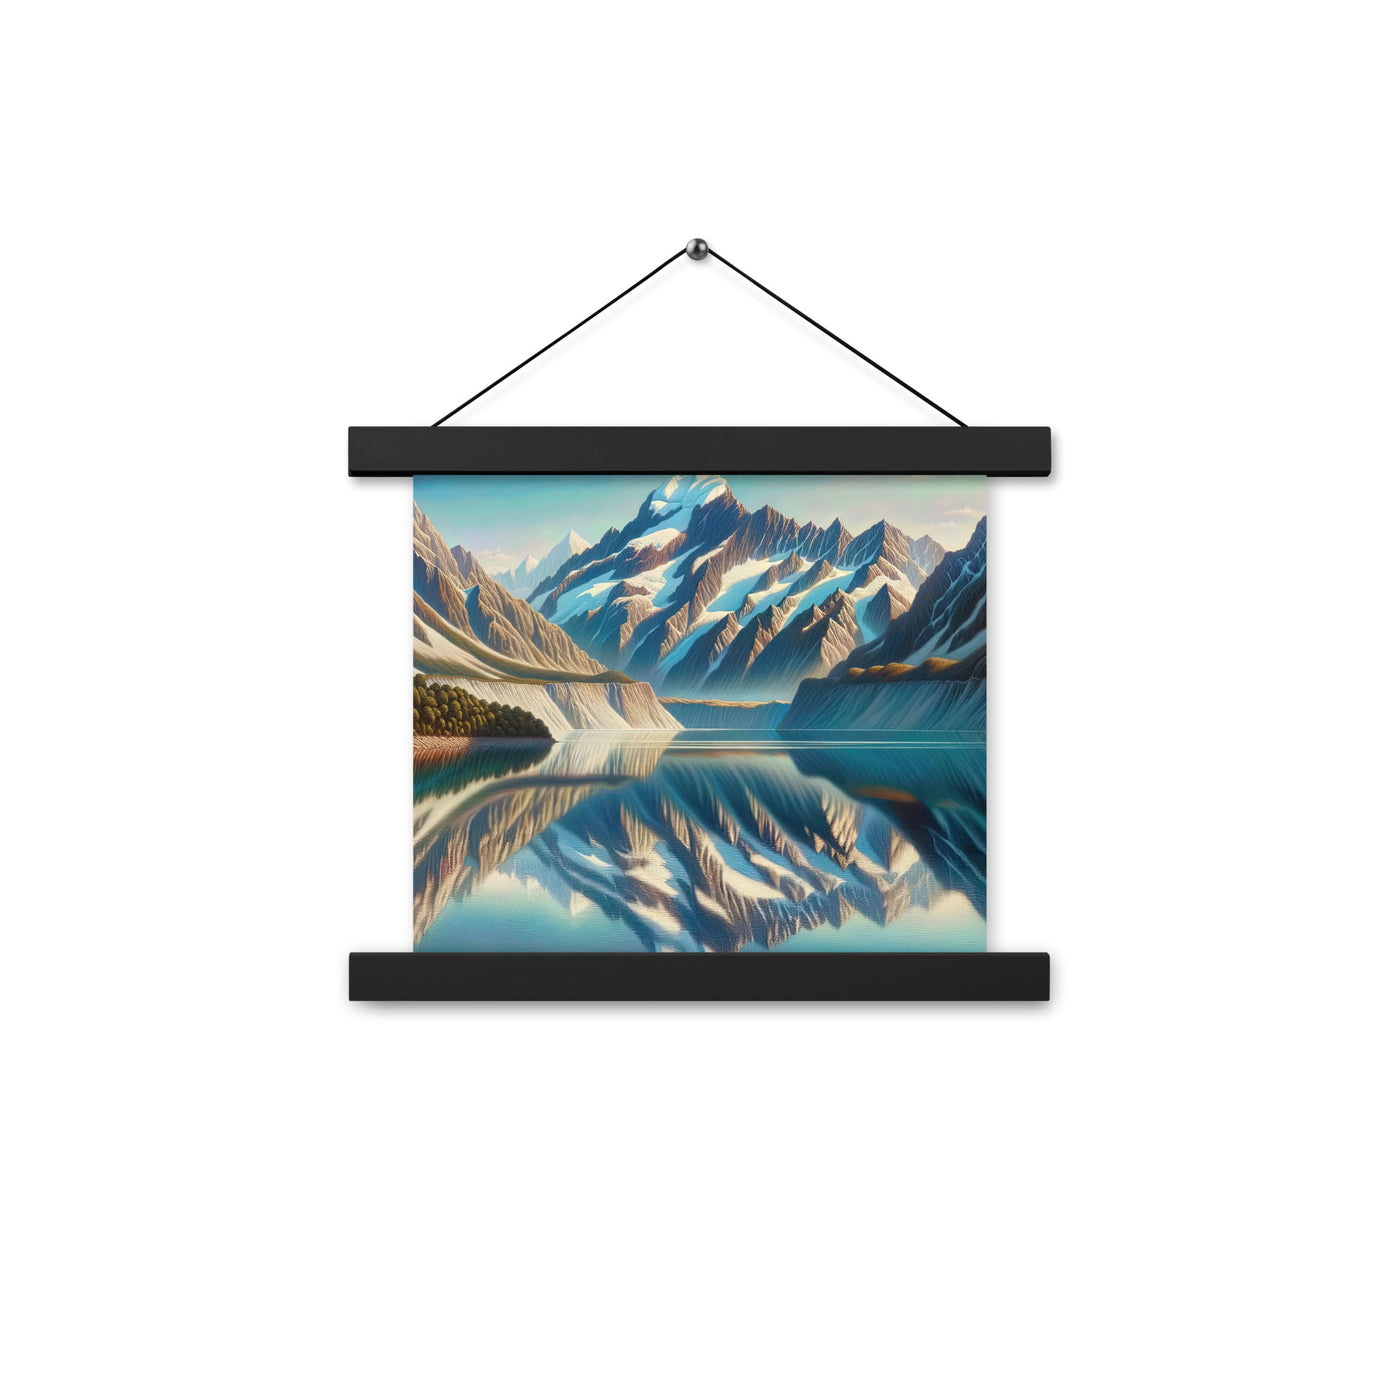 Ölgemälde eines unberührten Sees, der die Bergkette spiegelt - Premium Poster mit Aufhängung berge xxx yyy zzz 25.4 x 25.4 cm